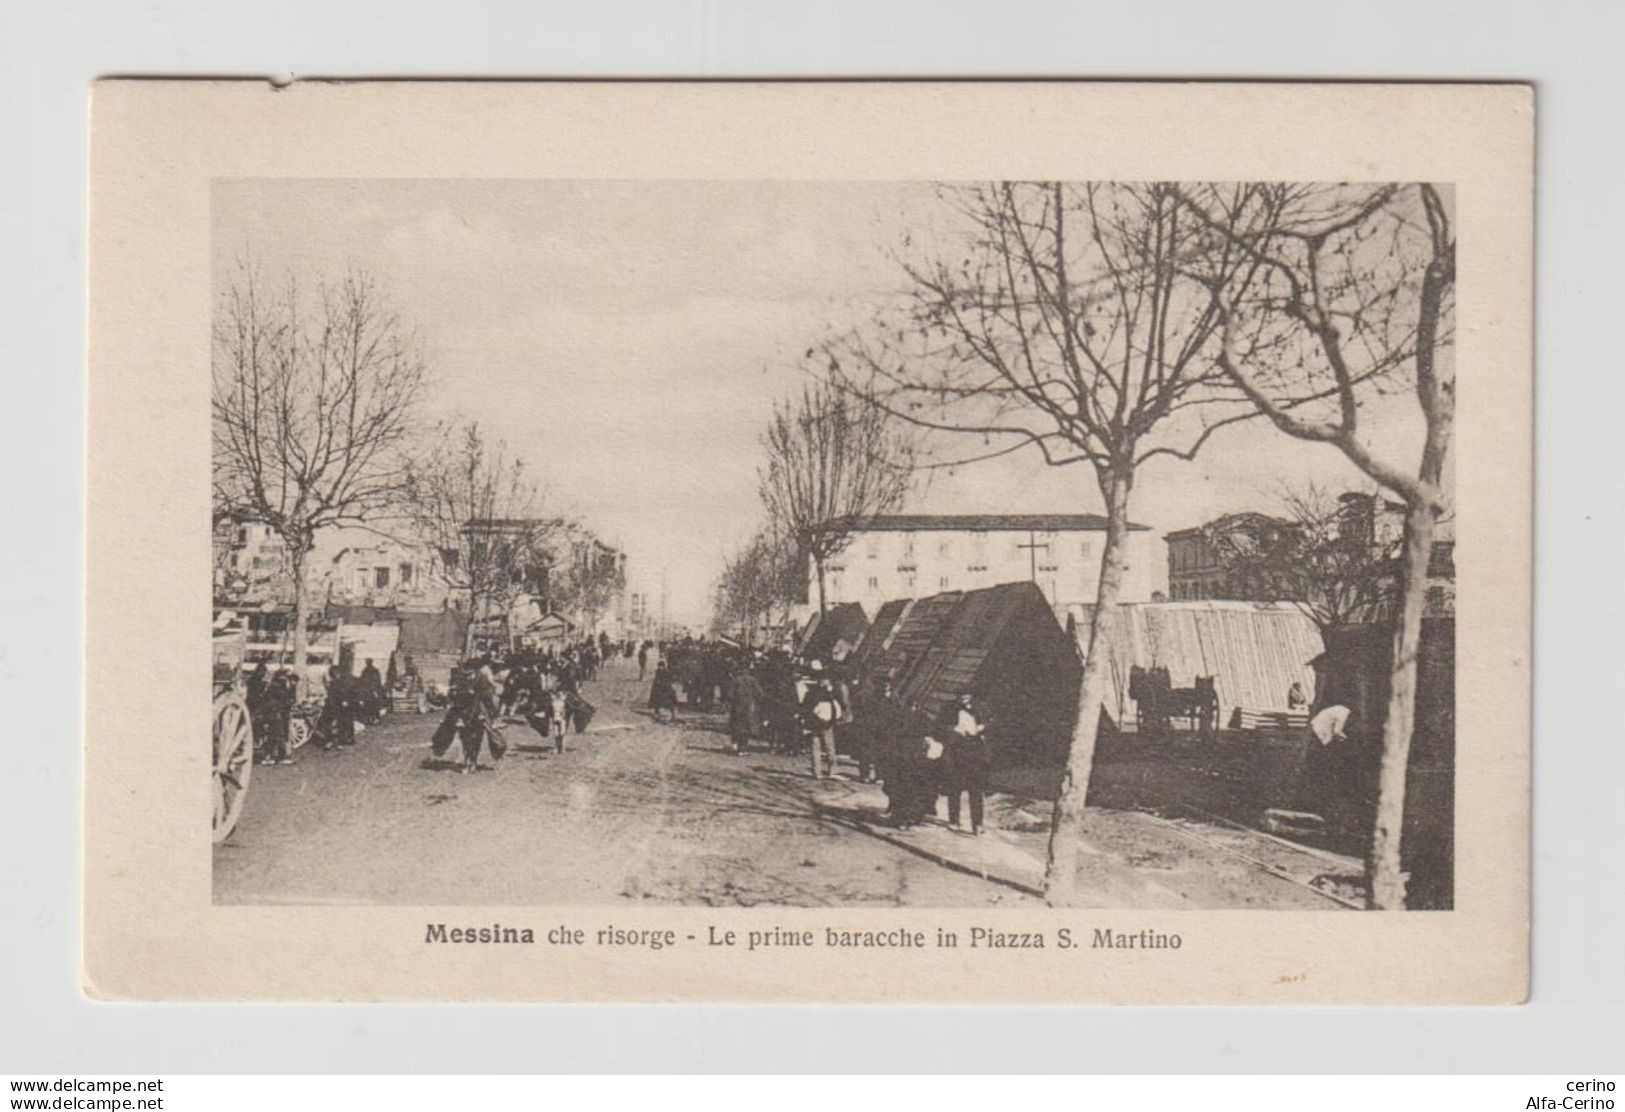 MESSINA  CHE  RISORGE:  LE  PRIME  BARACCHE  IN  PIAZZA  S. MARTINO  DOPO  IL  TERREMOTO  DEL  1908  -  FOTO  -  FP - Katastrophen